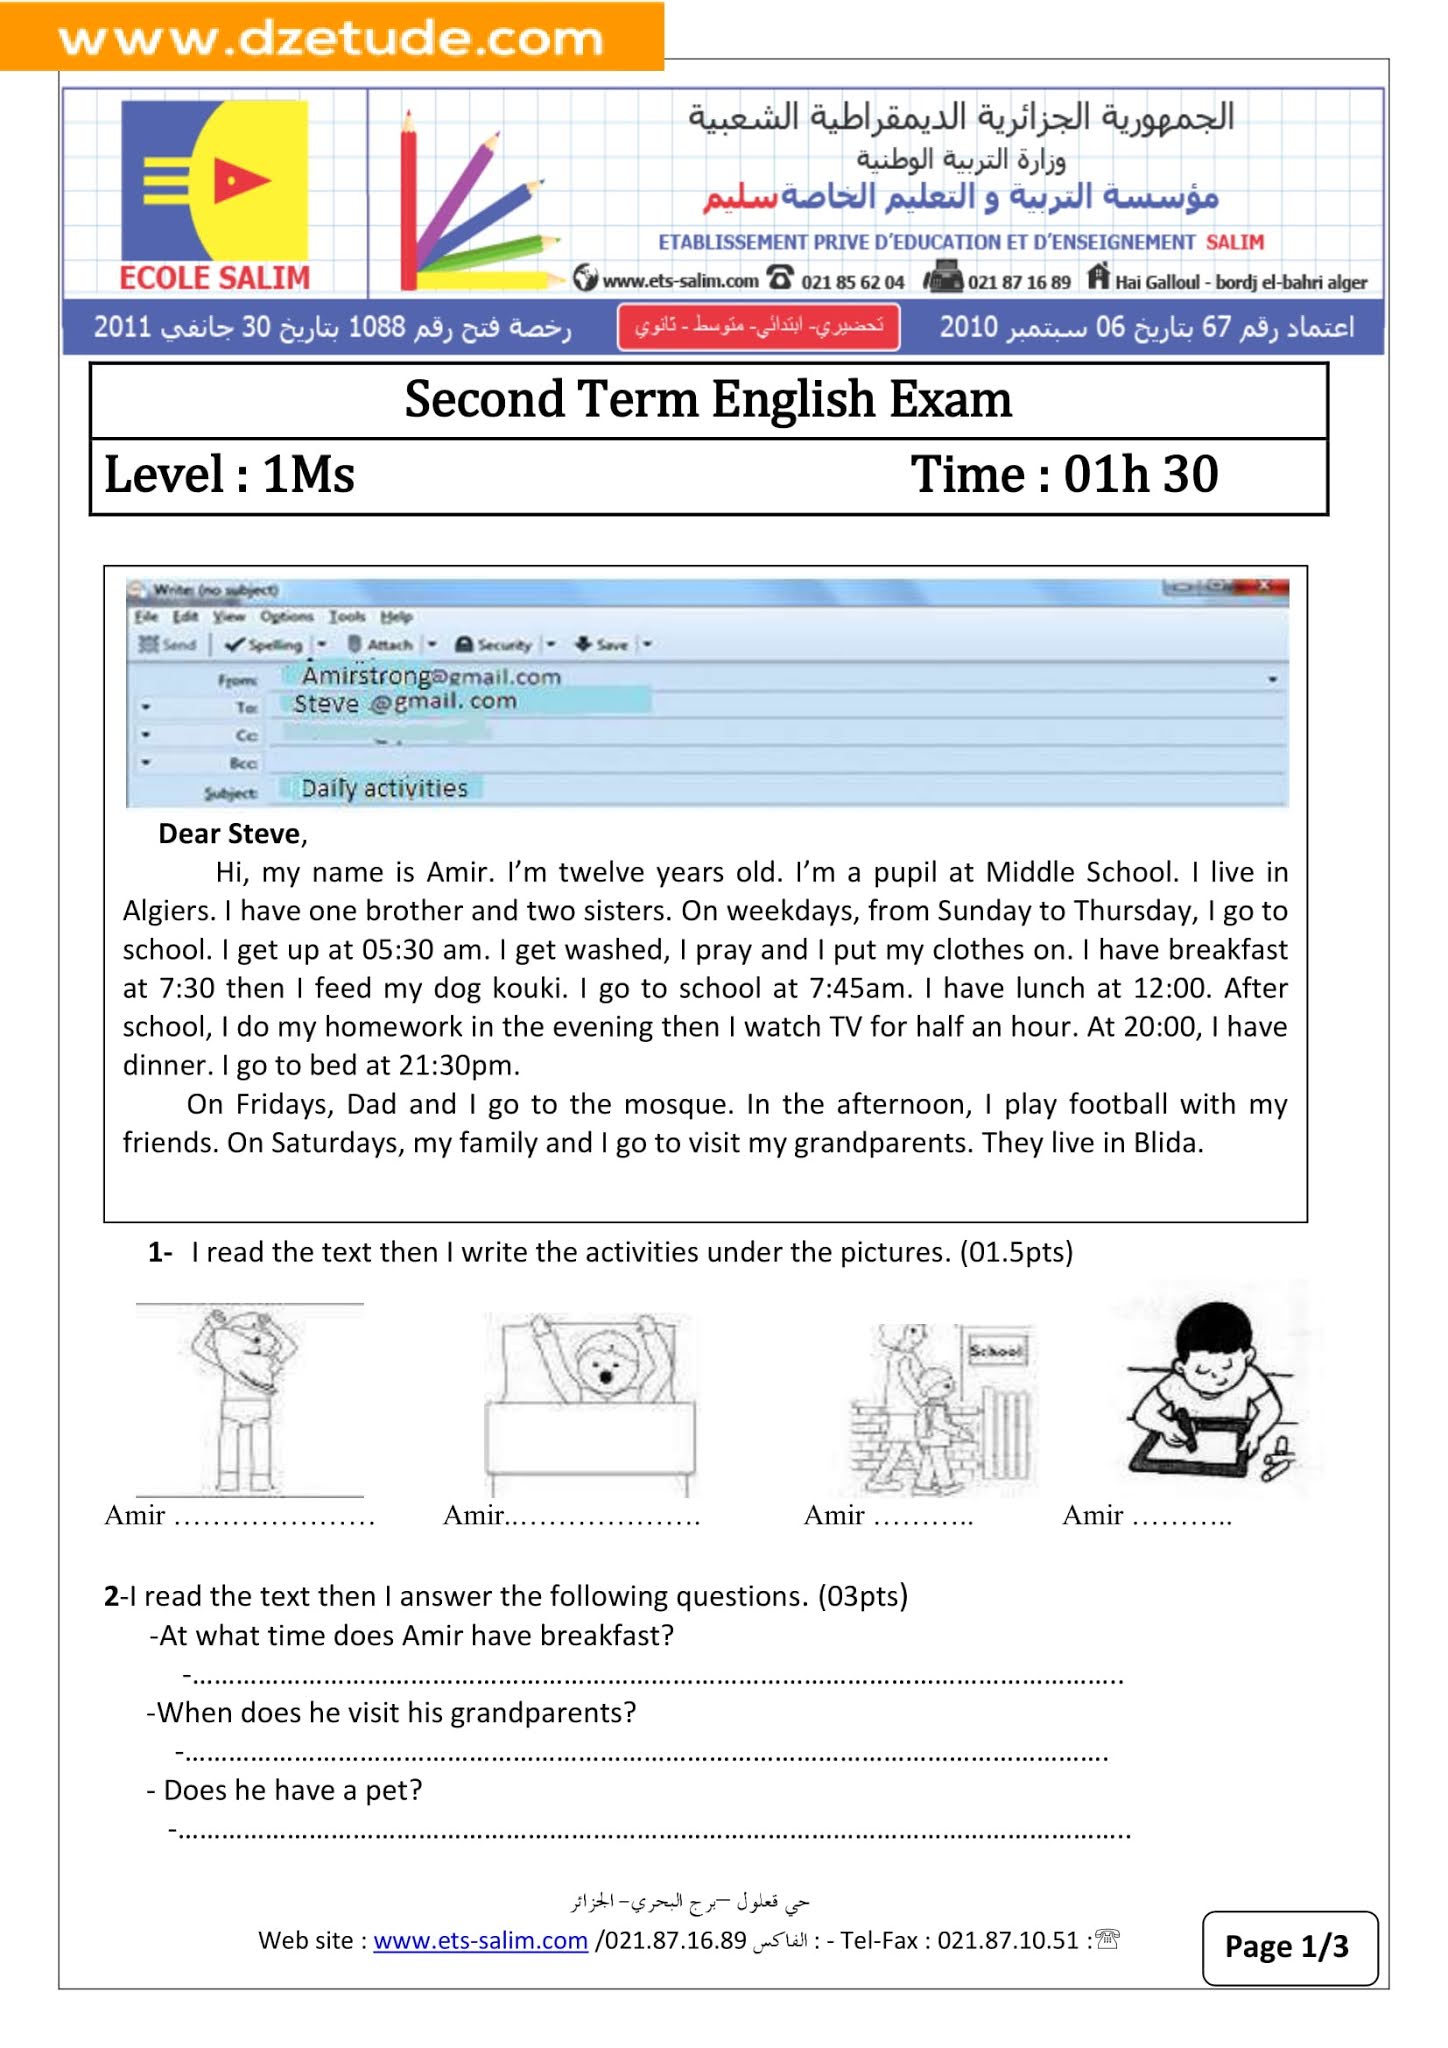 إختبار اللغة الإنجليزية الفصل الثاني للسنة الأولى متوسط - الجيل الثاني نموذج 2